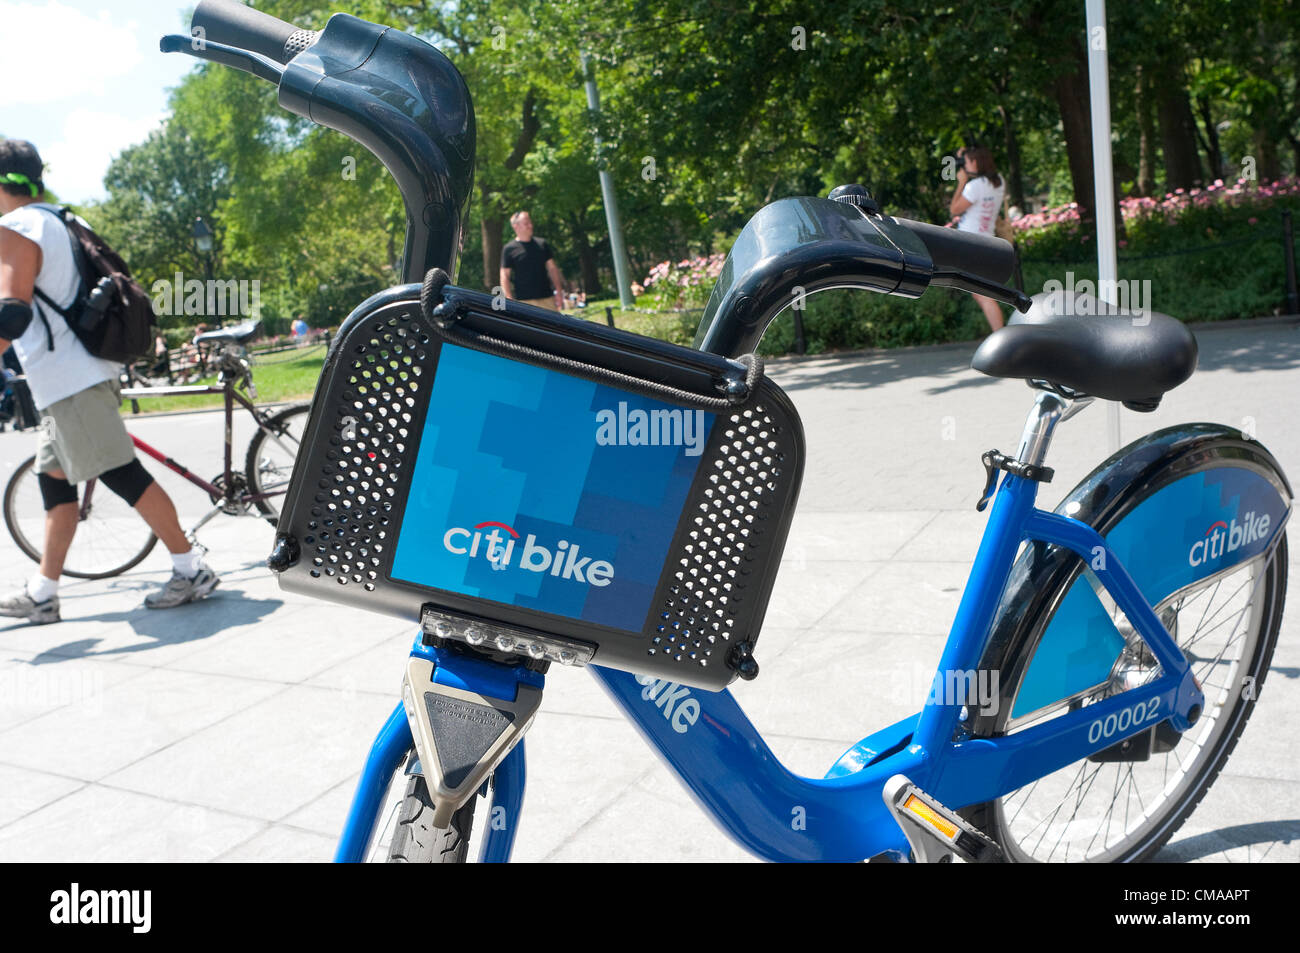 L'une des 6000 CitiBikes bleu qui fera partie de la ville de New York de neuf Programme BikeShare. ©Stacy Walsh Rosenstock/Alamy Banque D'Images